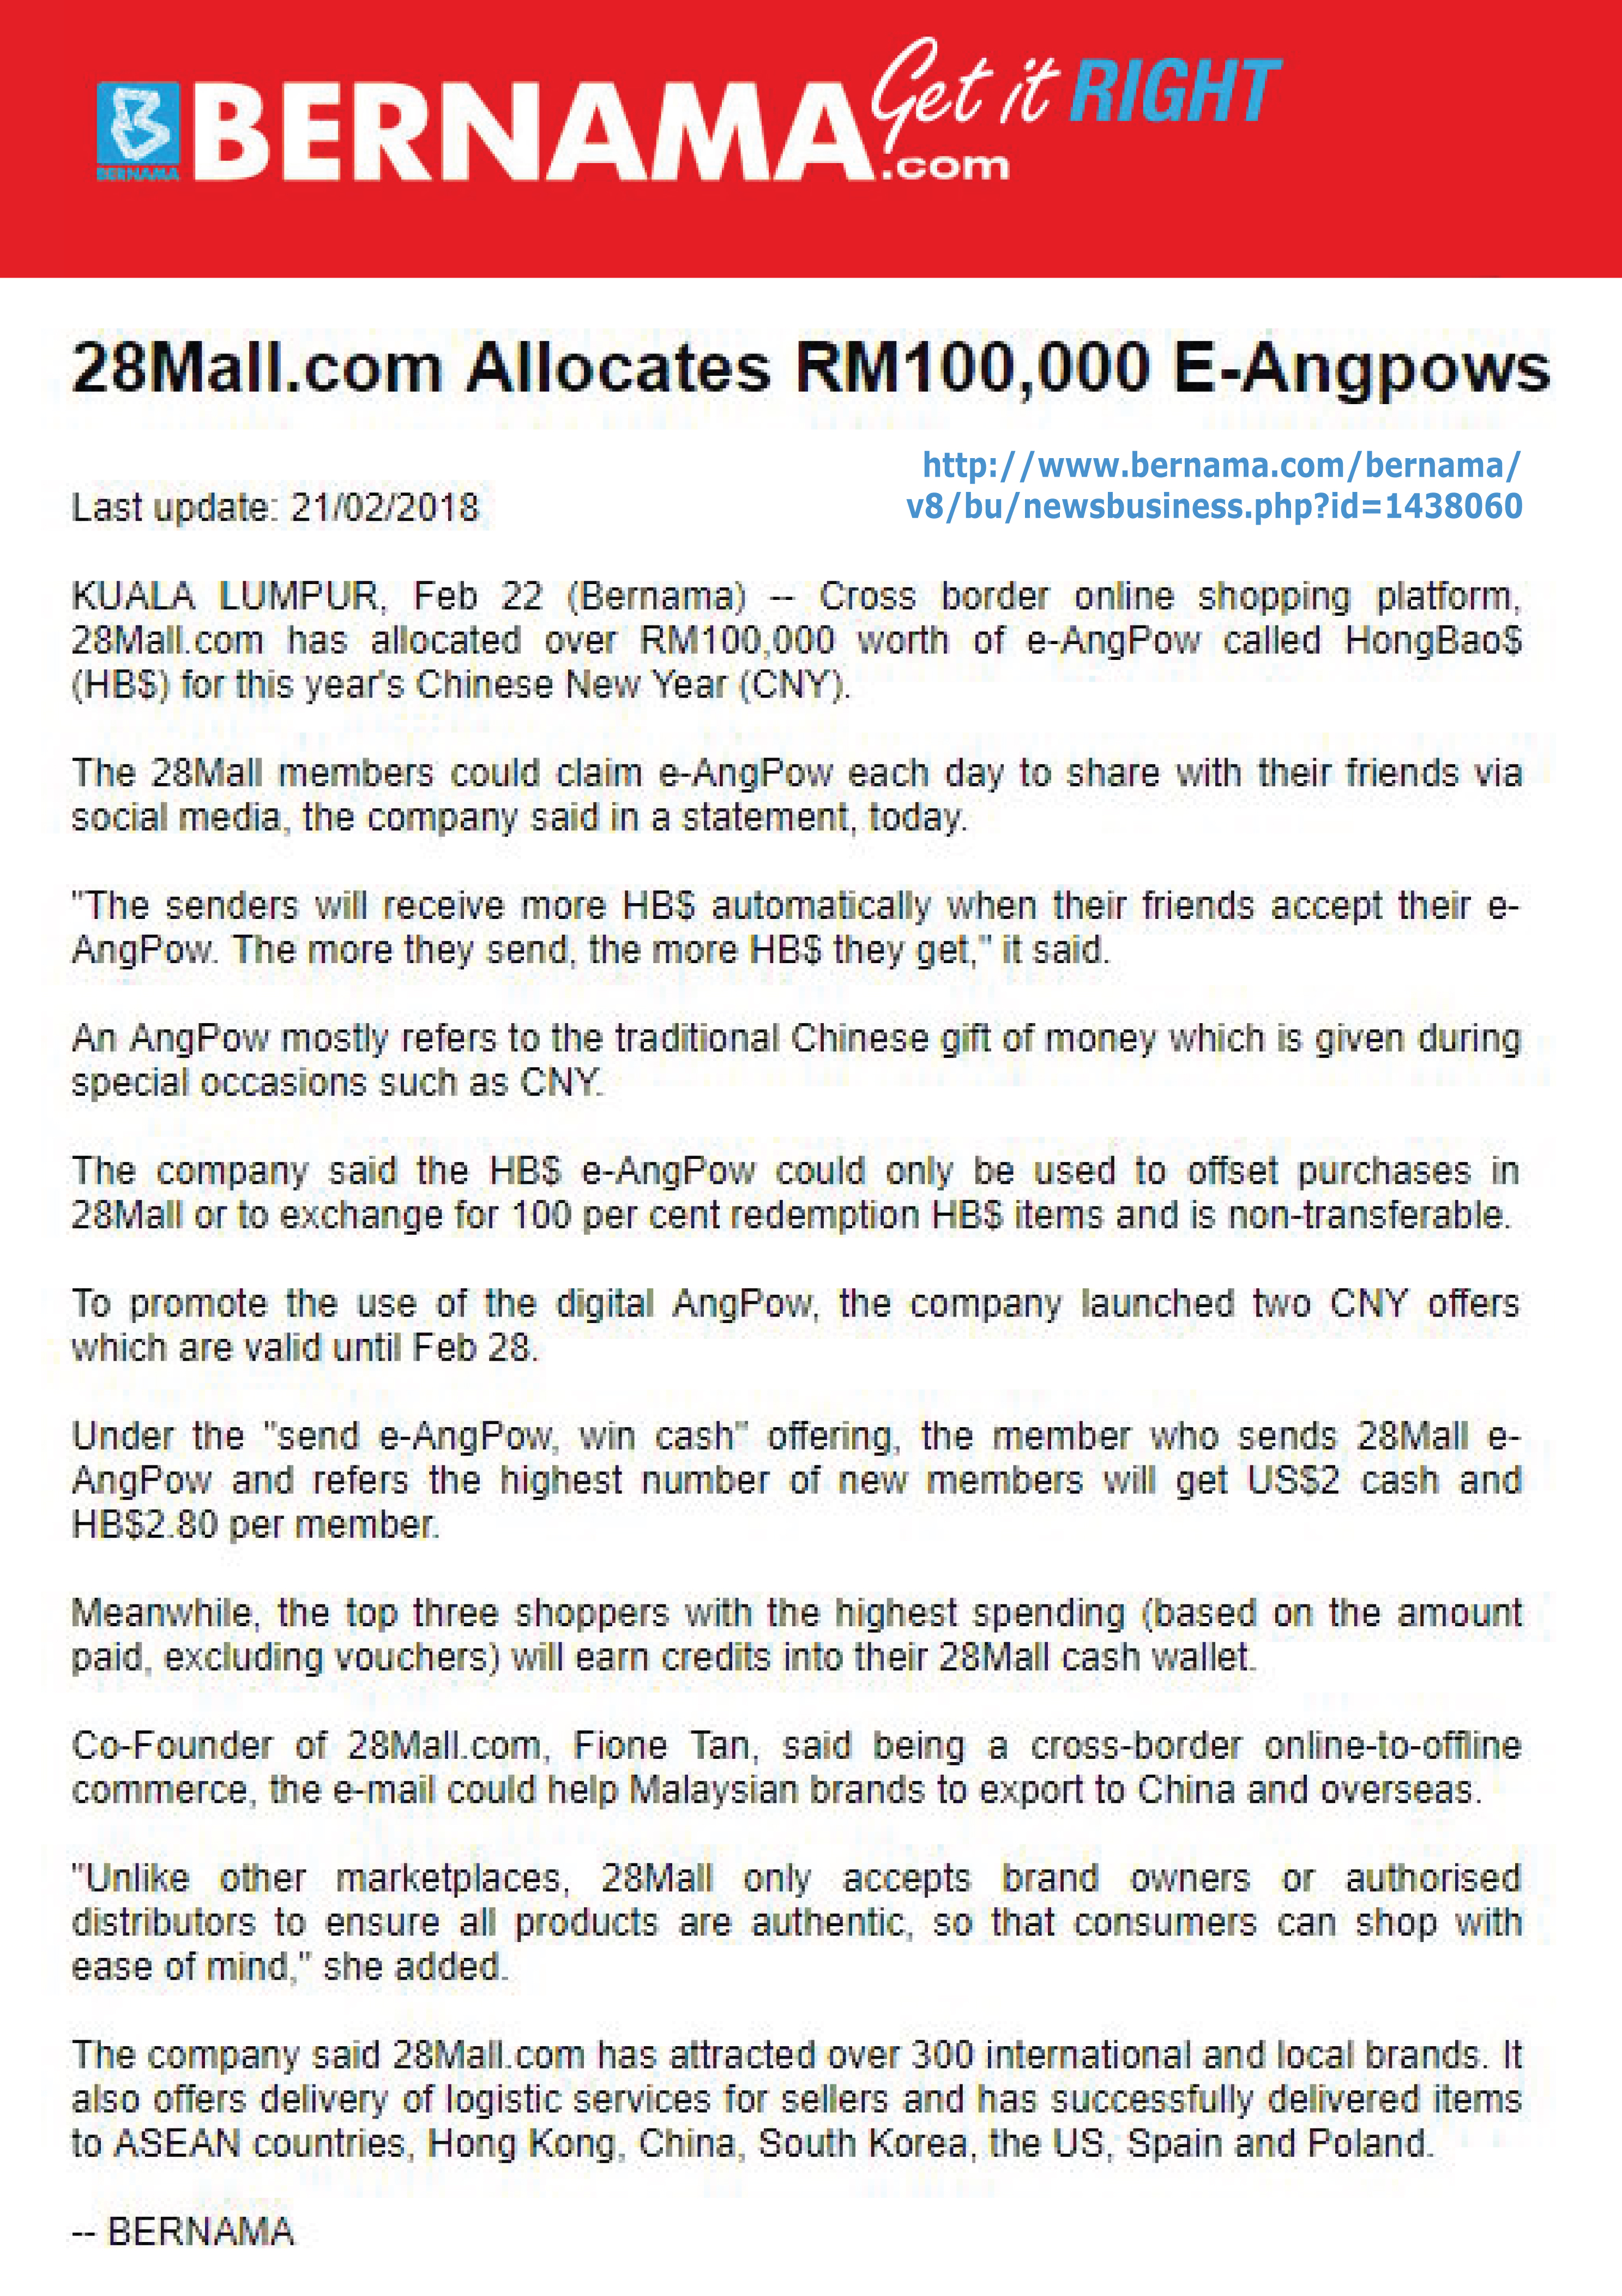 28Mall.com allocates RM100,000 e-AngPows